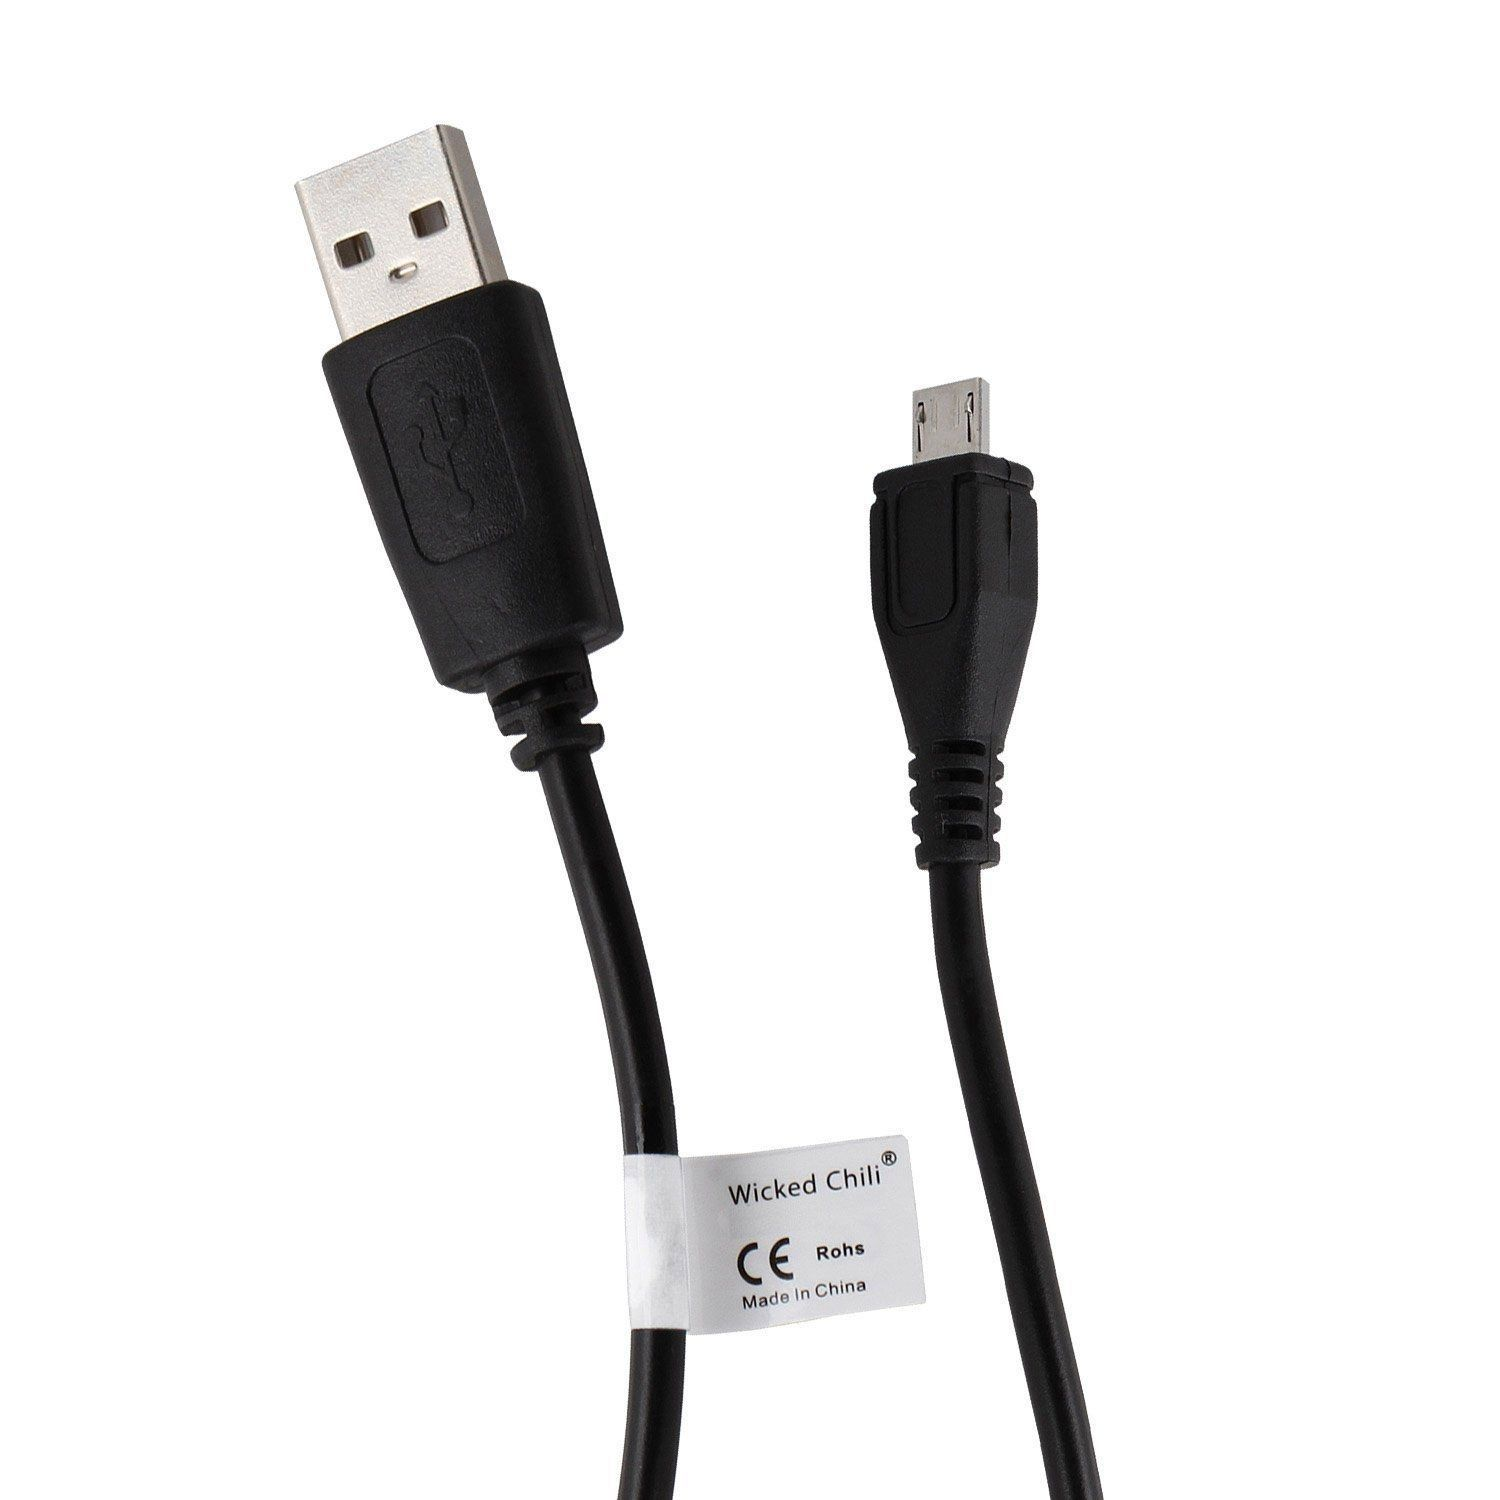 4 für Ladekabel PS4 schwarz USB Kabel DualShock MicroUSB WICKED Kabel 180cm CHILI Ladekabel, Controller Wireless 1,8 m, / Gamepad, für